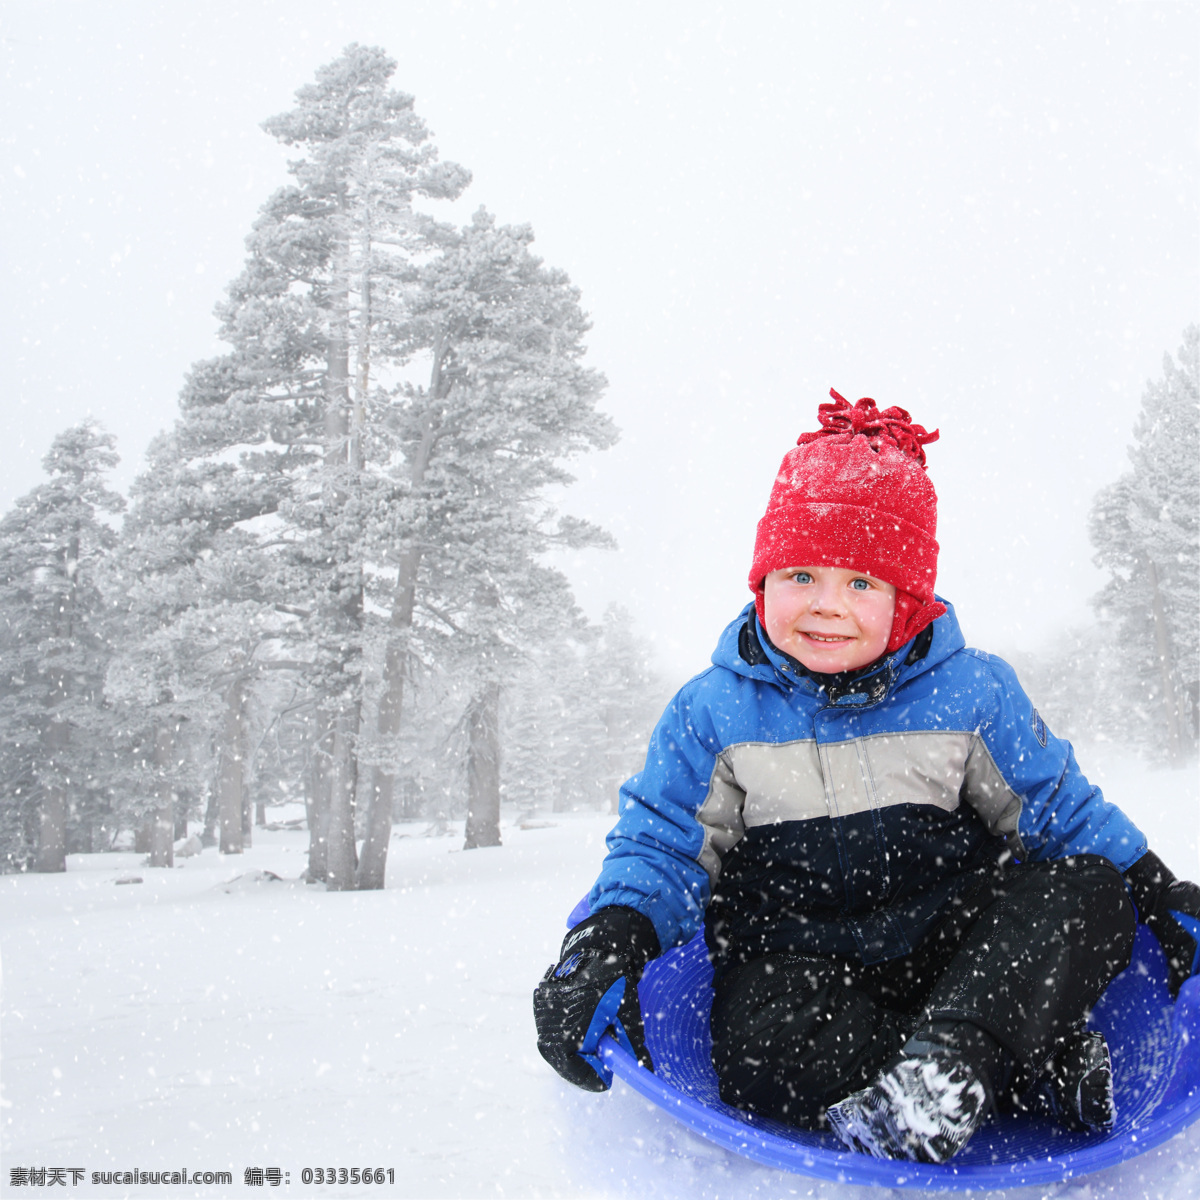 雪地 里 玩耍 小孩 人物 小朋友 冬天 冬季 下雪 积雪 嬉戏 开心 微笑 滑雪 儿童图片 人物图片